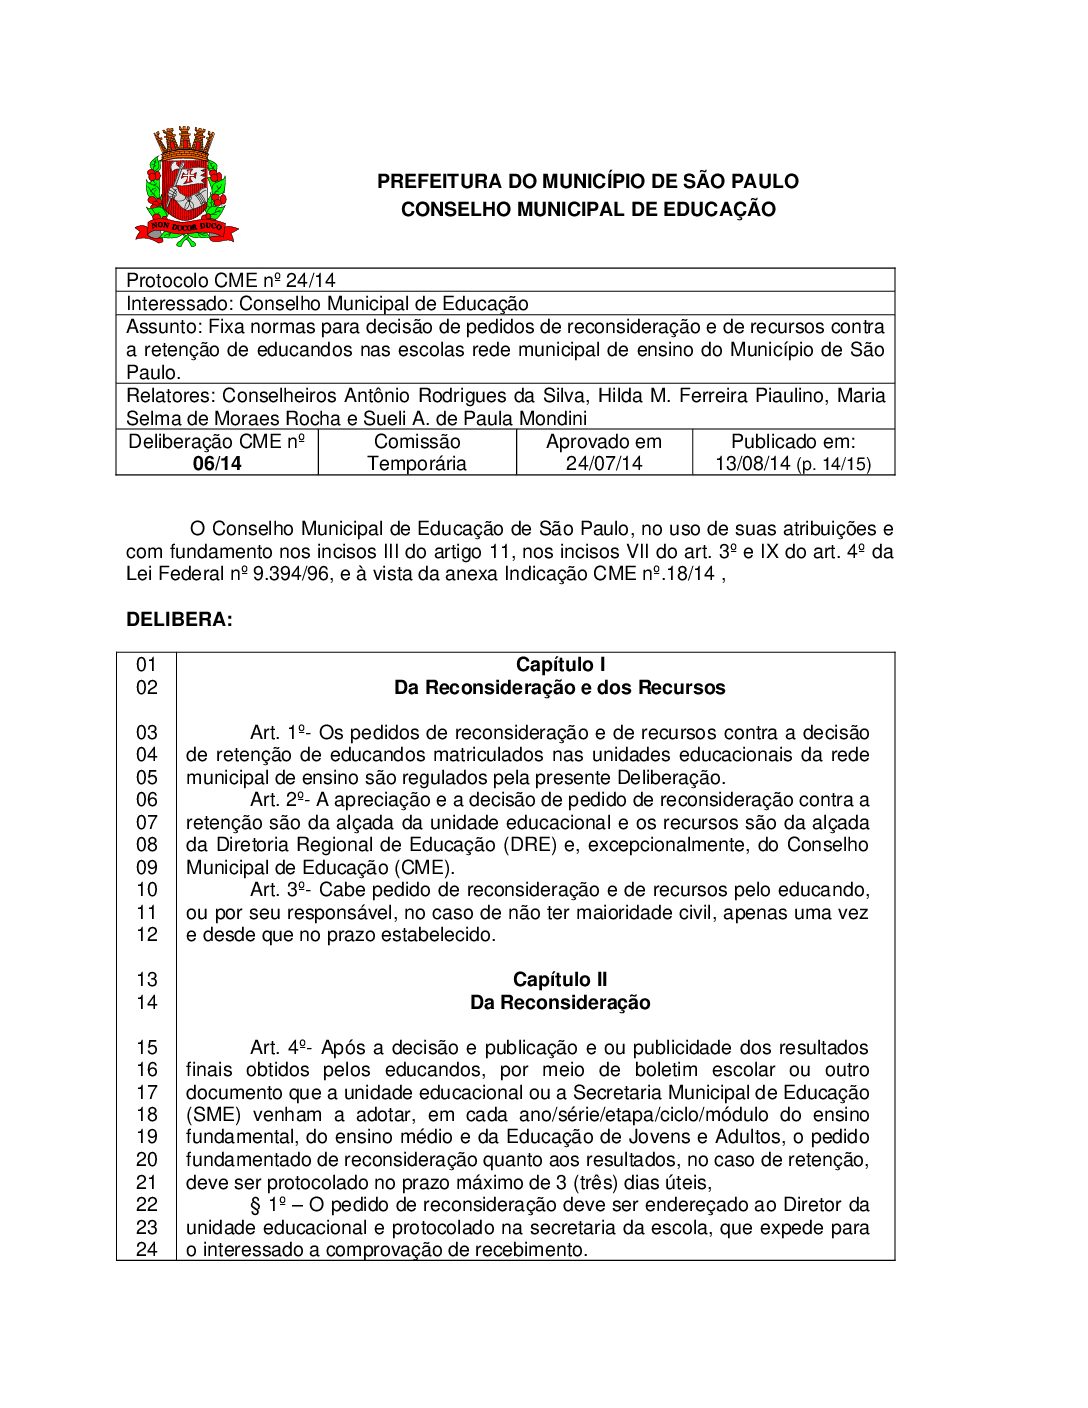 Deliberação CME nº 06/2014 - Fixa normas para decisão de pedidos de reconsideração e de recursos contra a retenção de educandos nas escolas rede municipal de ensino do Município de São Paulo